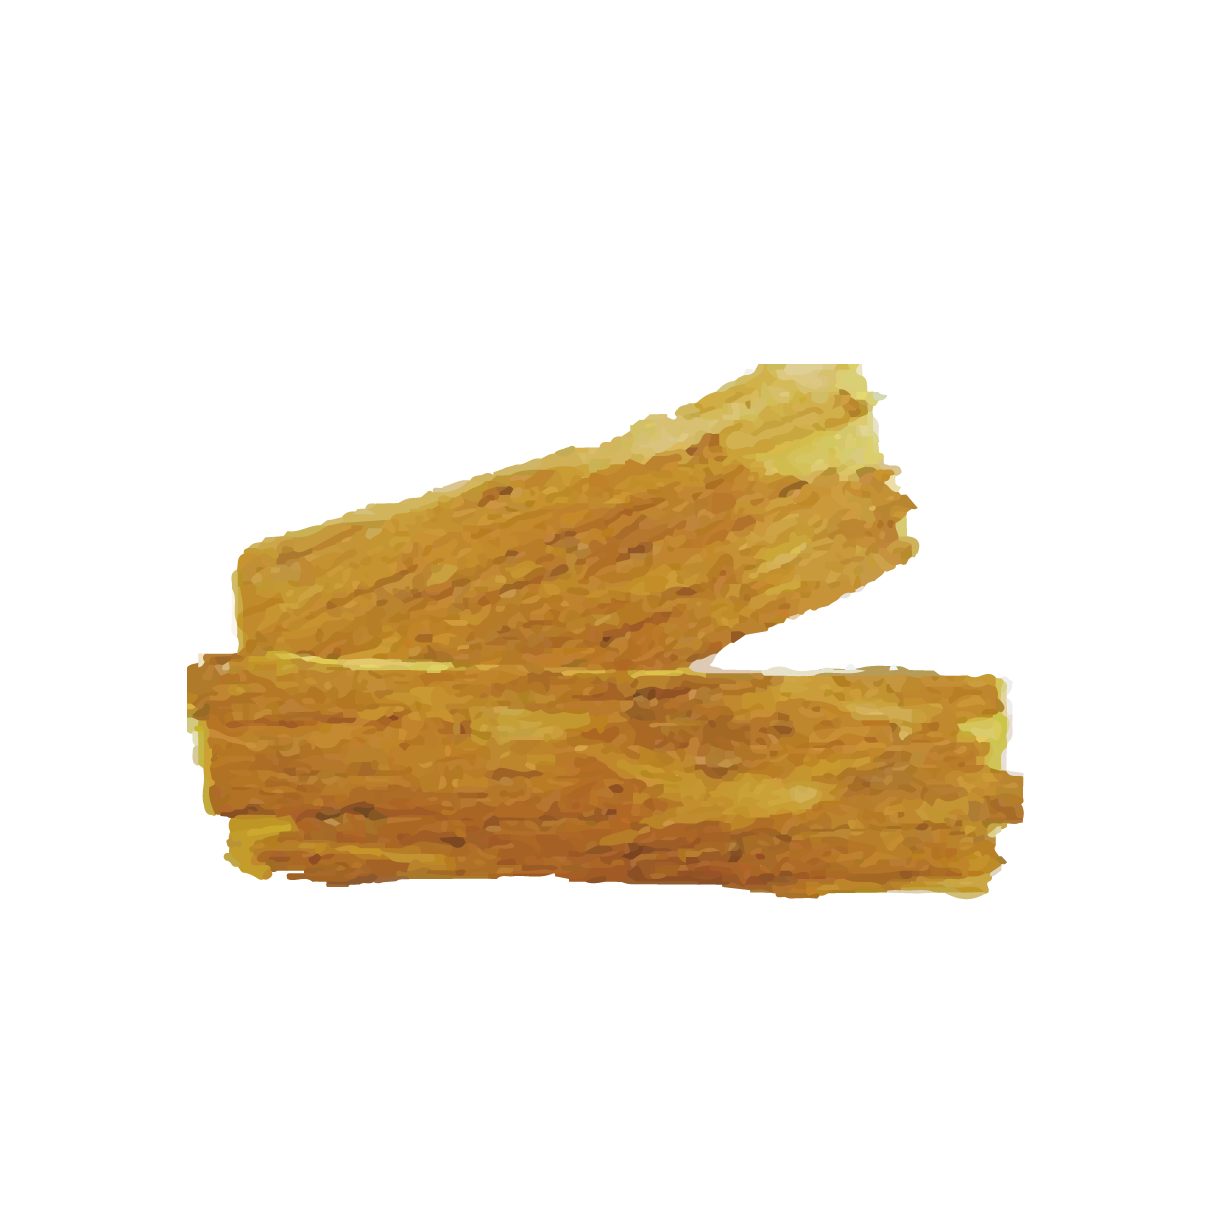 キハダ樹皮のイメージ